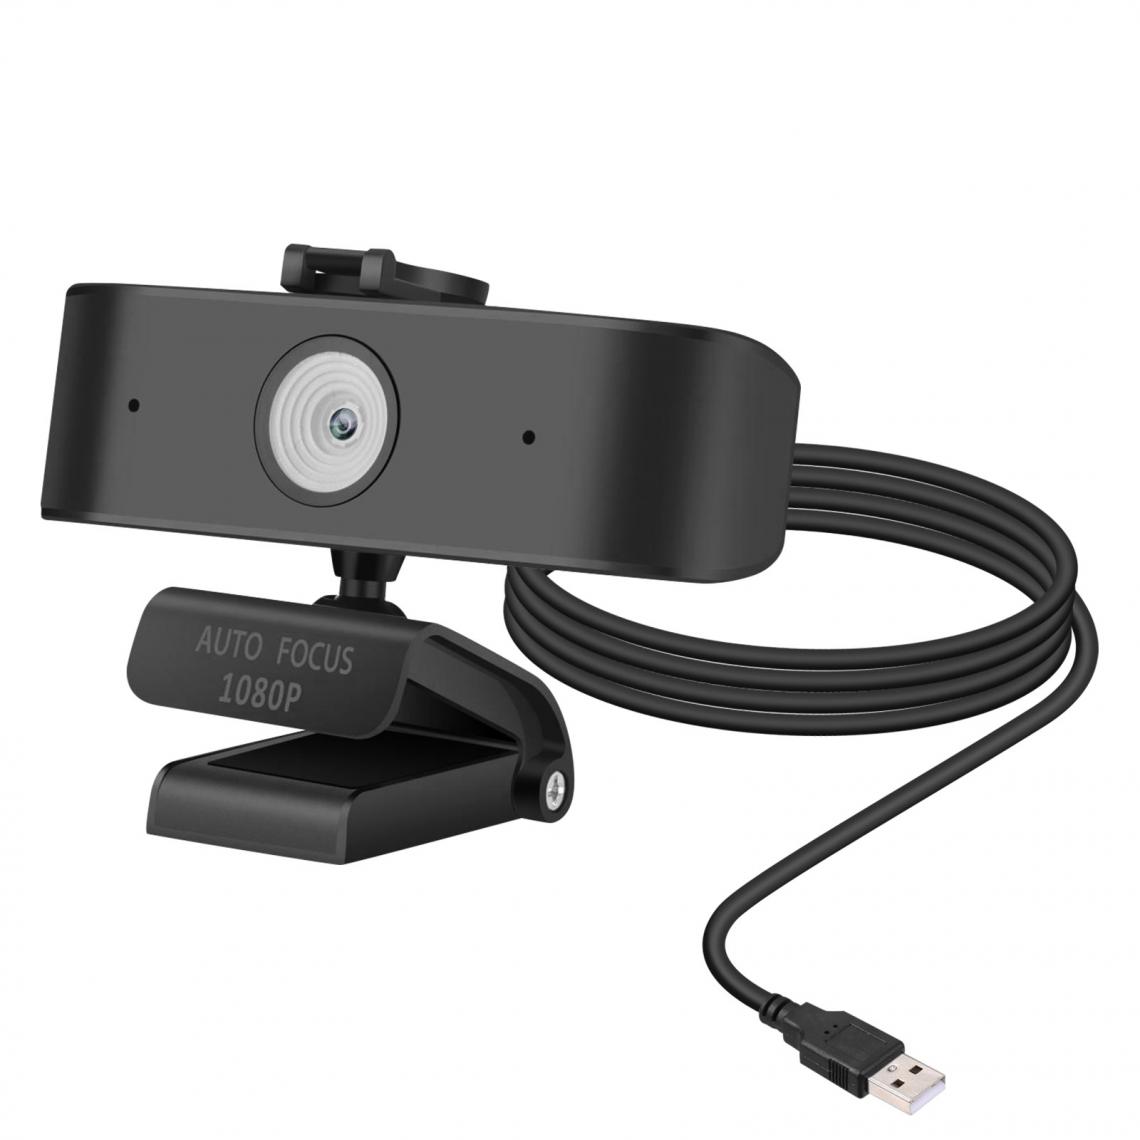 Avizar - Webcam USB PC / Ordinateur Haute Résolution Full HD 1080P Auto focus Noir - Webcam